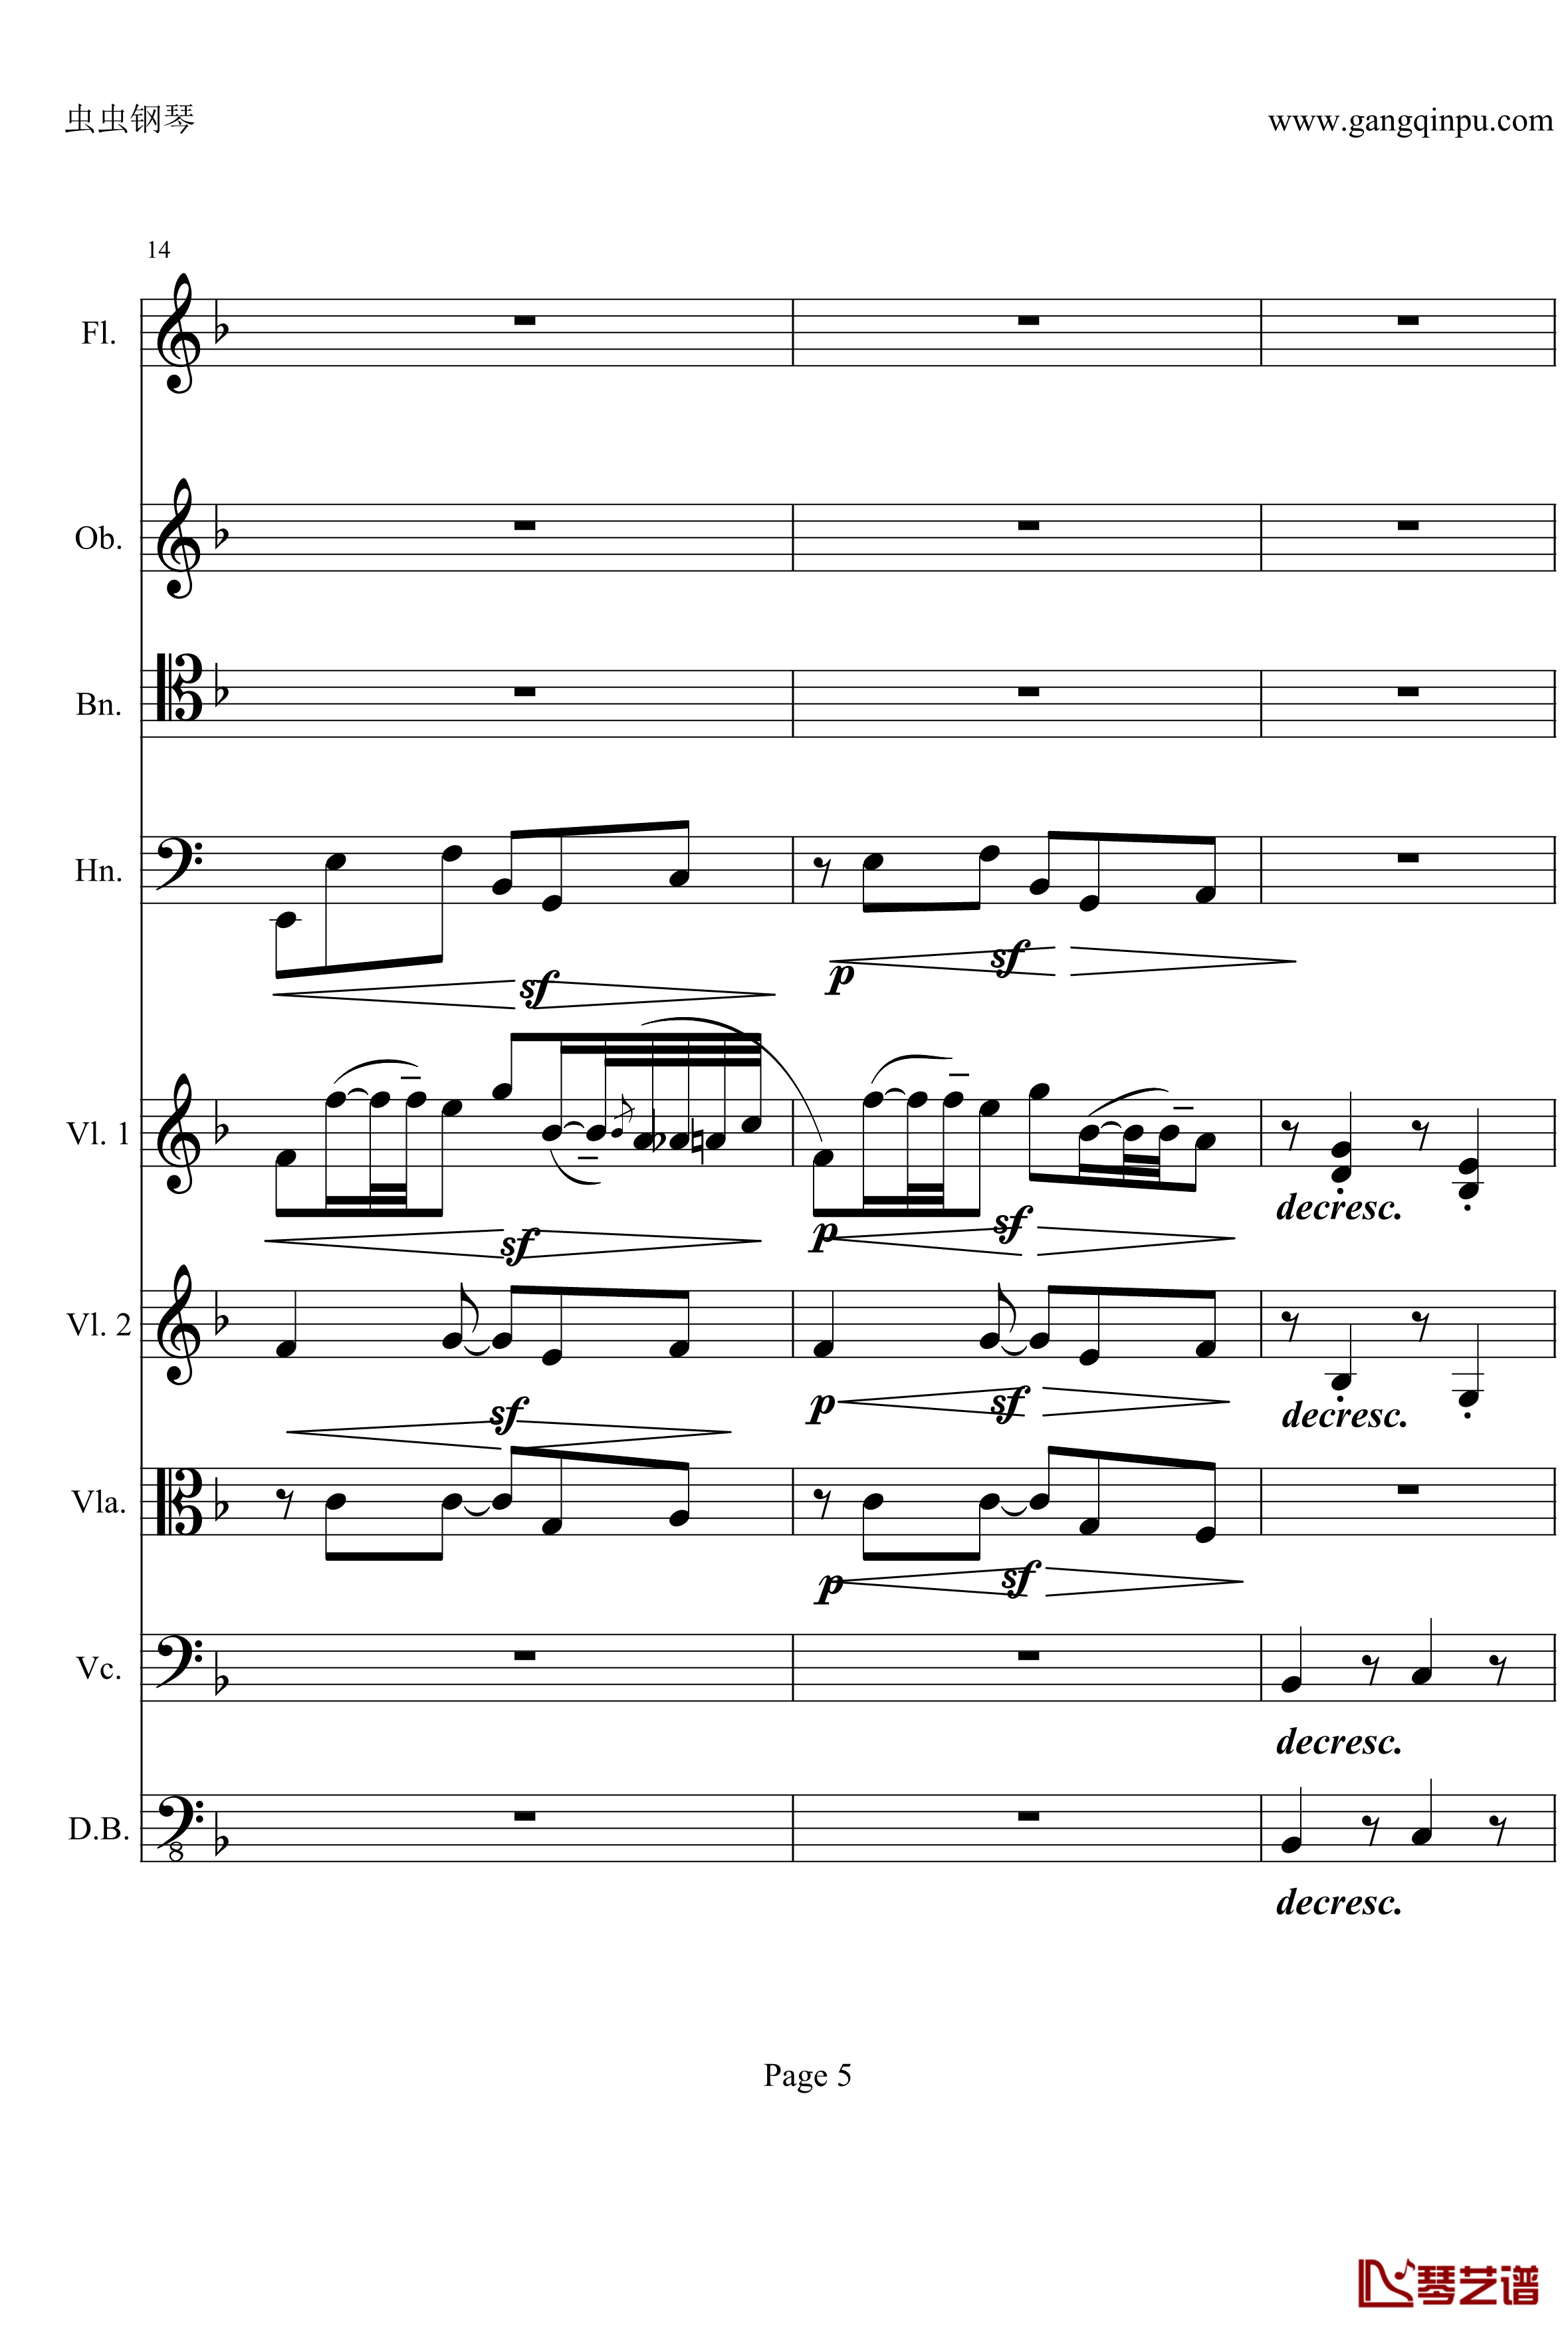 奏鸣曲之交响钢琴谱-第21-Ⅱ-贝多芬-beethoven